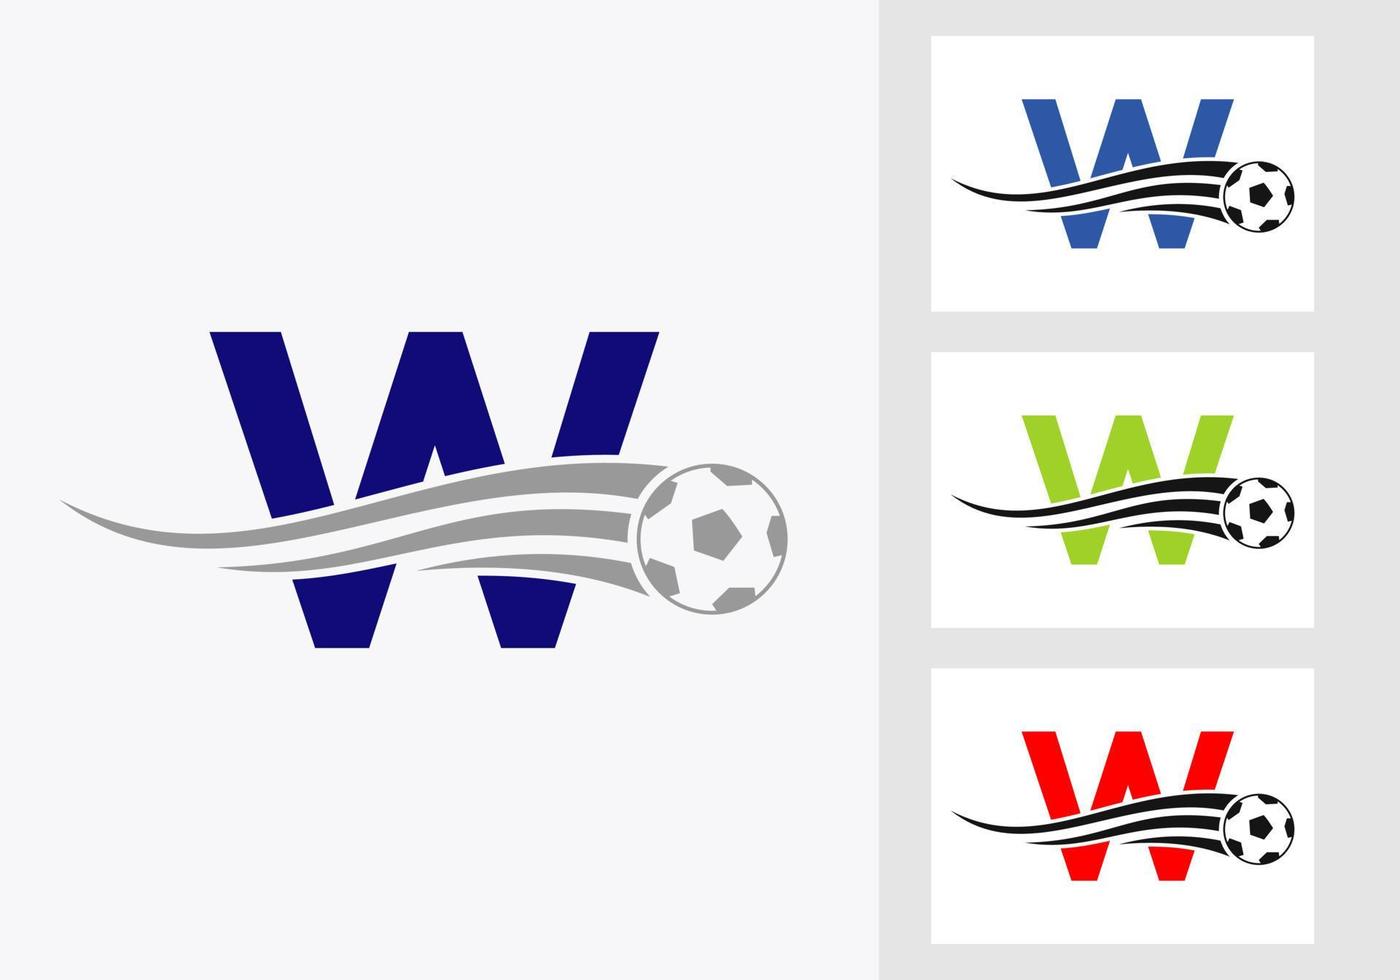 Fußball-Fußball-Logo auf dem Zeichen des Buchstabens w. Fußballverein-Emblem Konzept der Fußballmannschaftsikone vektor